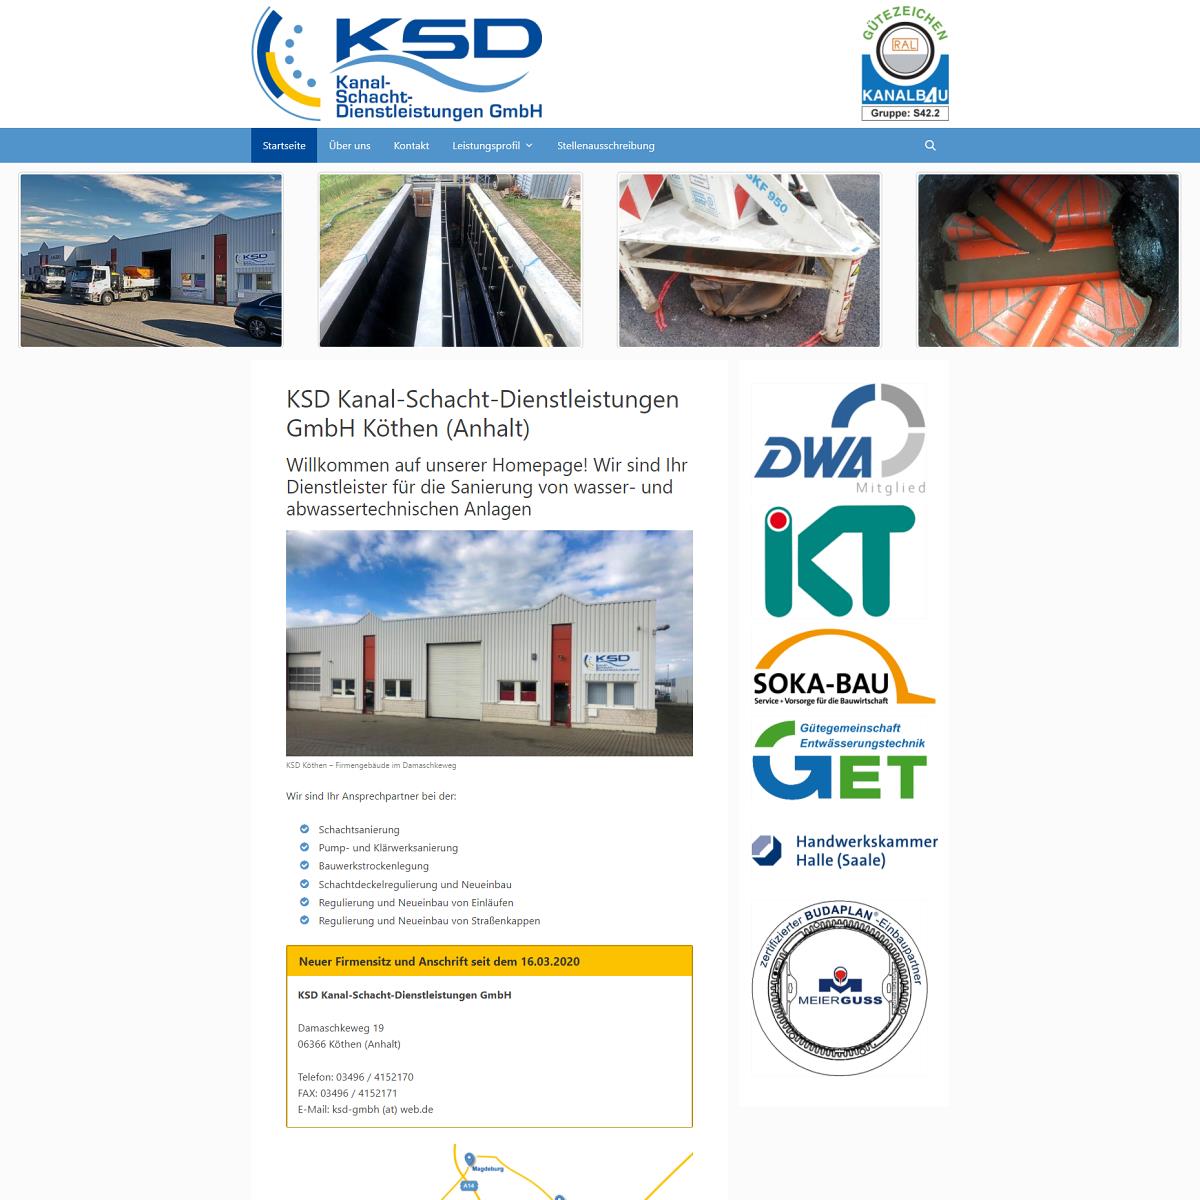 KSD Kanal-Schacht-Dienstleistungen GmbH Köthen (Anhalt)